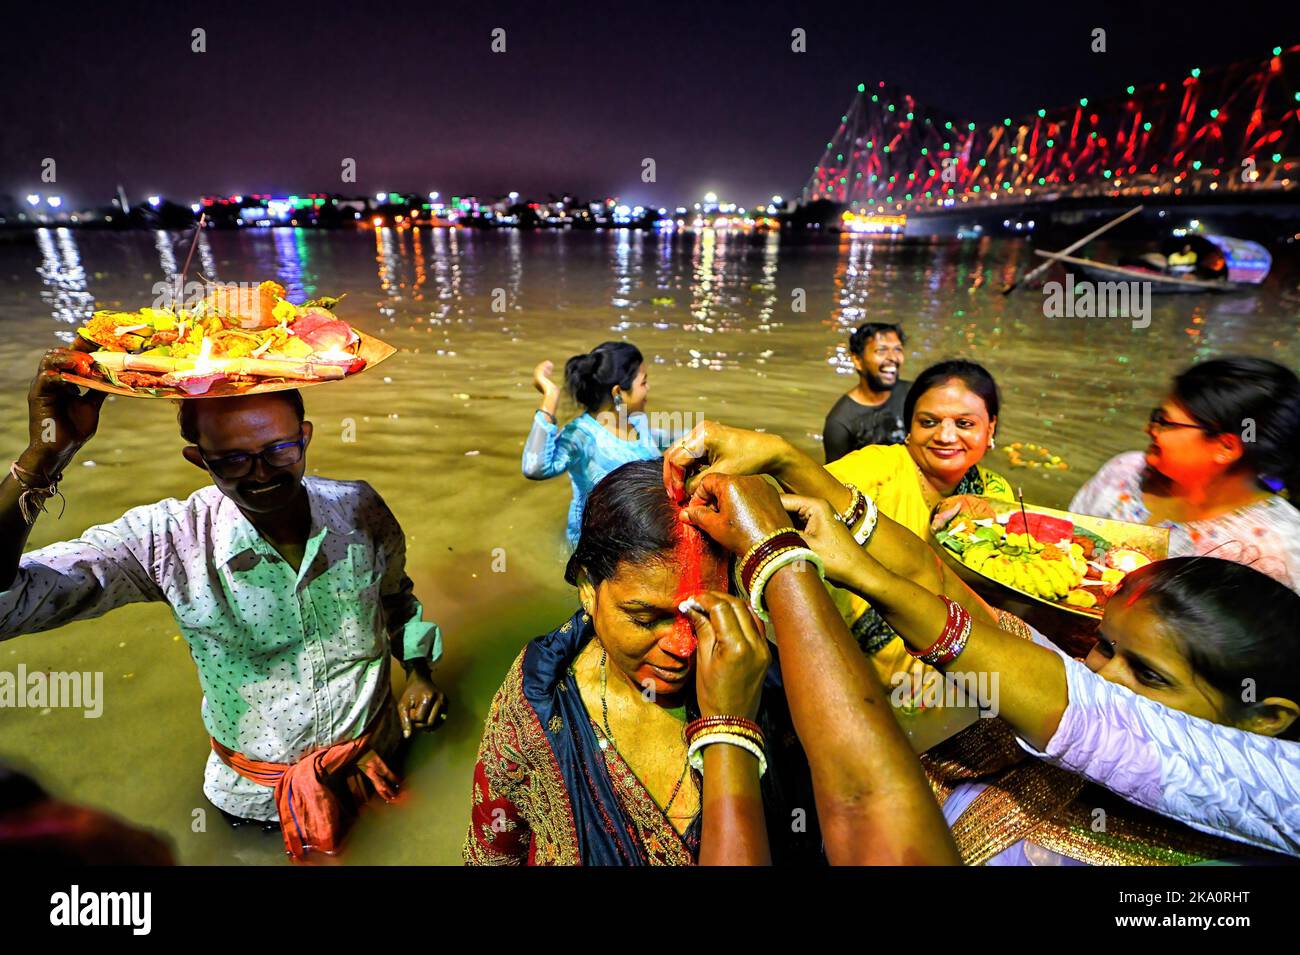 Kalkutta, Indien. 30. Oktober 2022. Hinduistische Anhänger werden gesehen, wie sie Abendrituale anlässlich der Chhat Puja im Ganga River durchführen. Chhath ist ein hinduistisches Fest, bei dem der Sonne Gebete gewidmet werden, um Dankbarkeit und Dankbarkeit für die Überwindung der Hürden des Lebens während des ganzen Jahres zu zeigen. Den ganzen Tag fasten Hindu-Anhänger suchen nach dem Segen der Lord Sun gemäß der hinduistischen Mythologie. Da das Festival der Sonne gewidmet ist, findet es jedes Jahr während der Sonnenaufgang und -Untergang Ende Oktober/Mitte November statt. (Foto: Avishek das/SOPA Images/Sipa USA) Quelle: SIPA USA/Alamy Live News Stockfoto